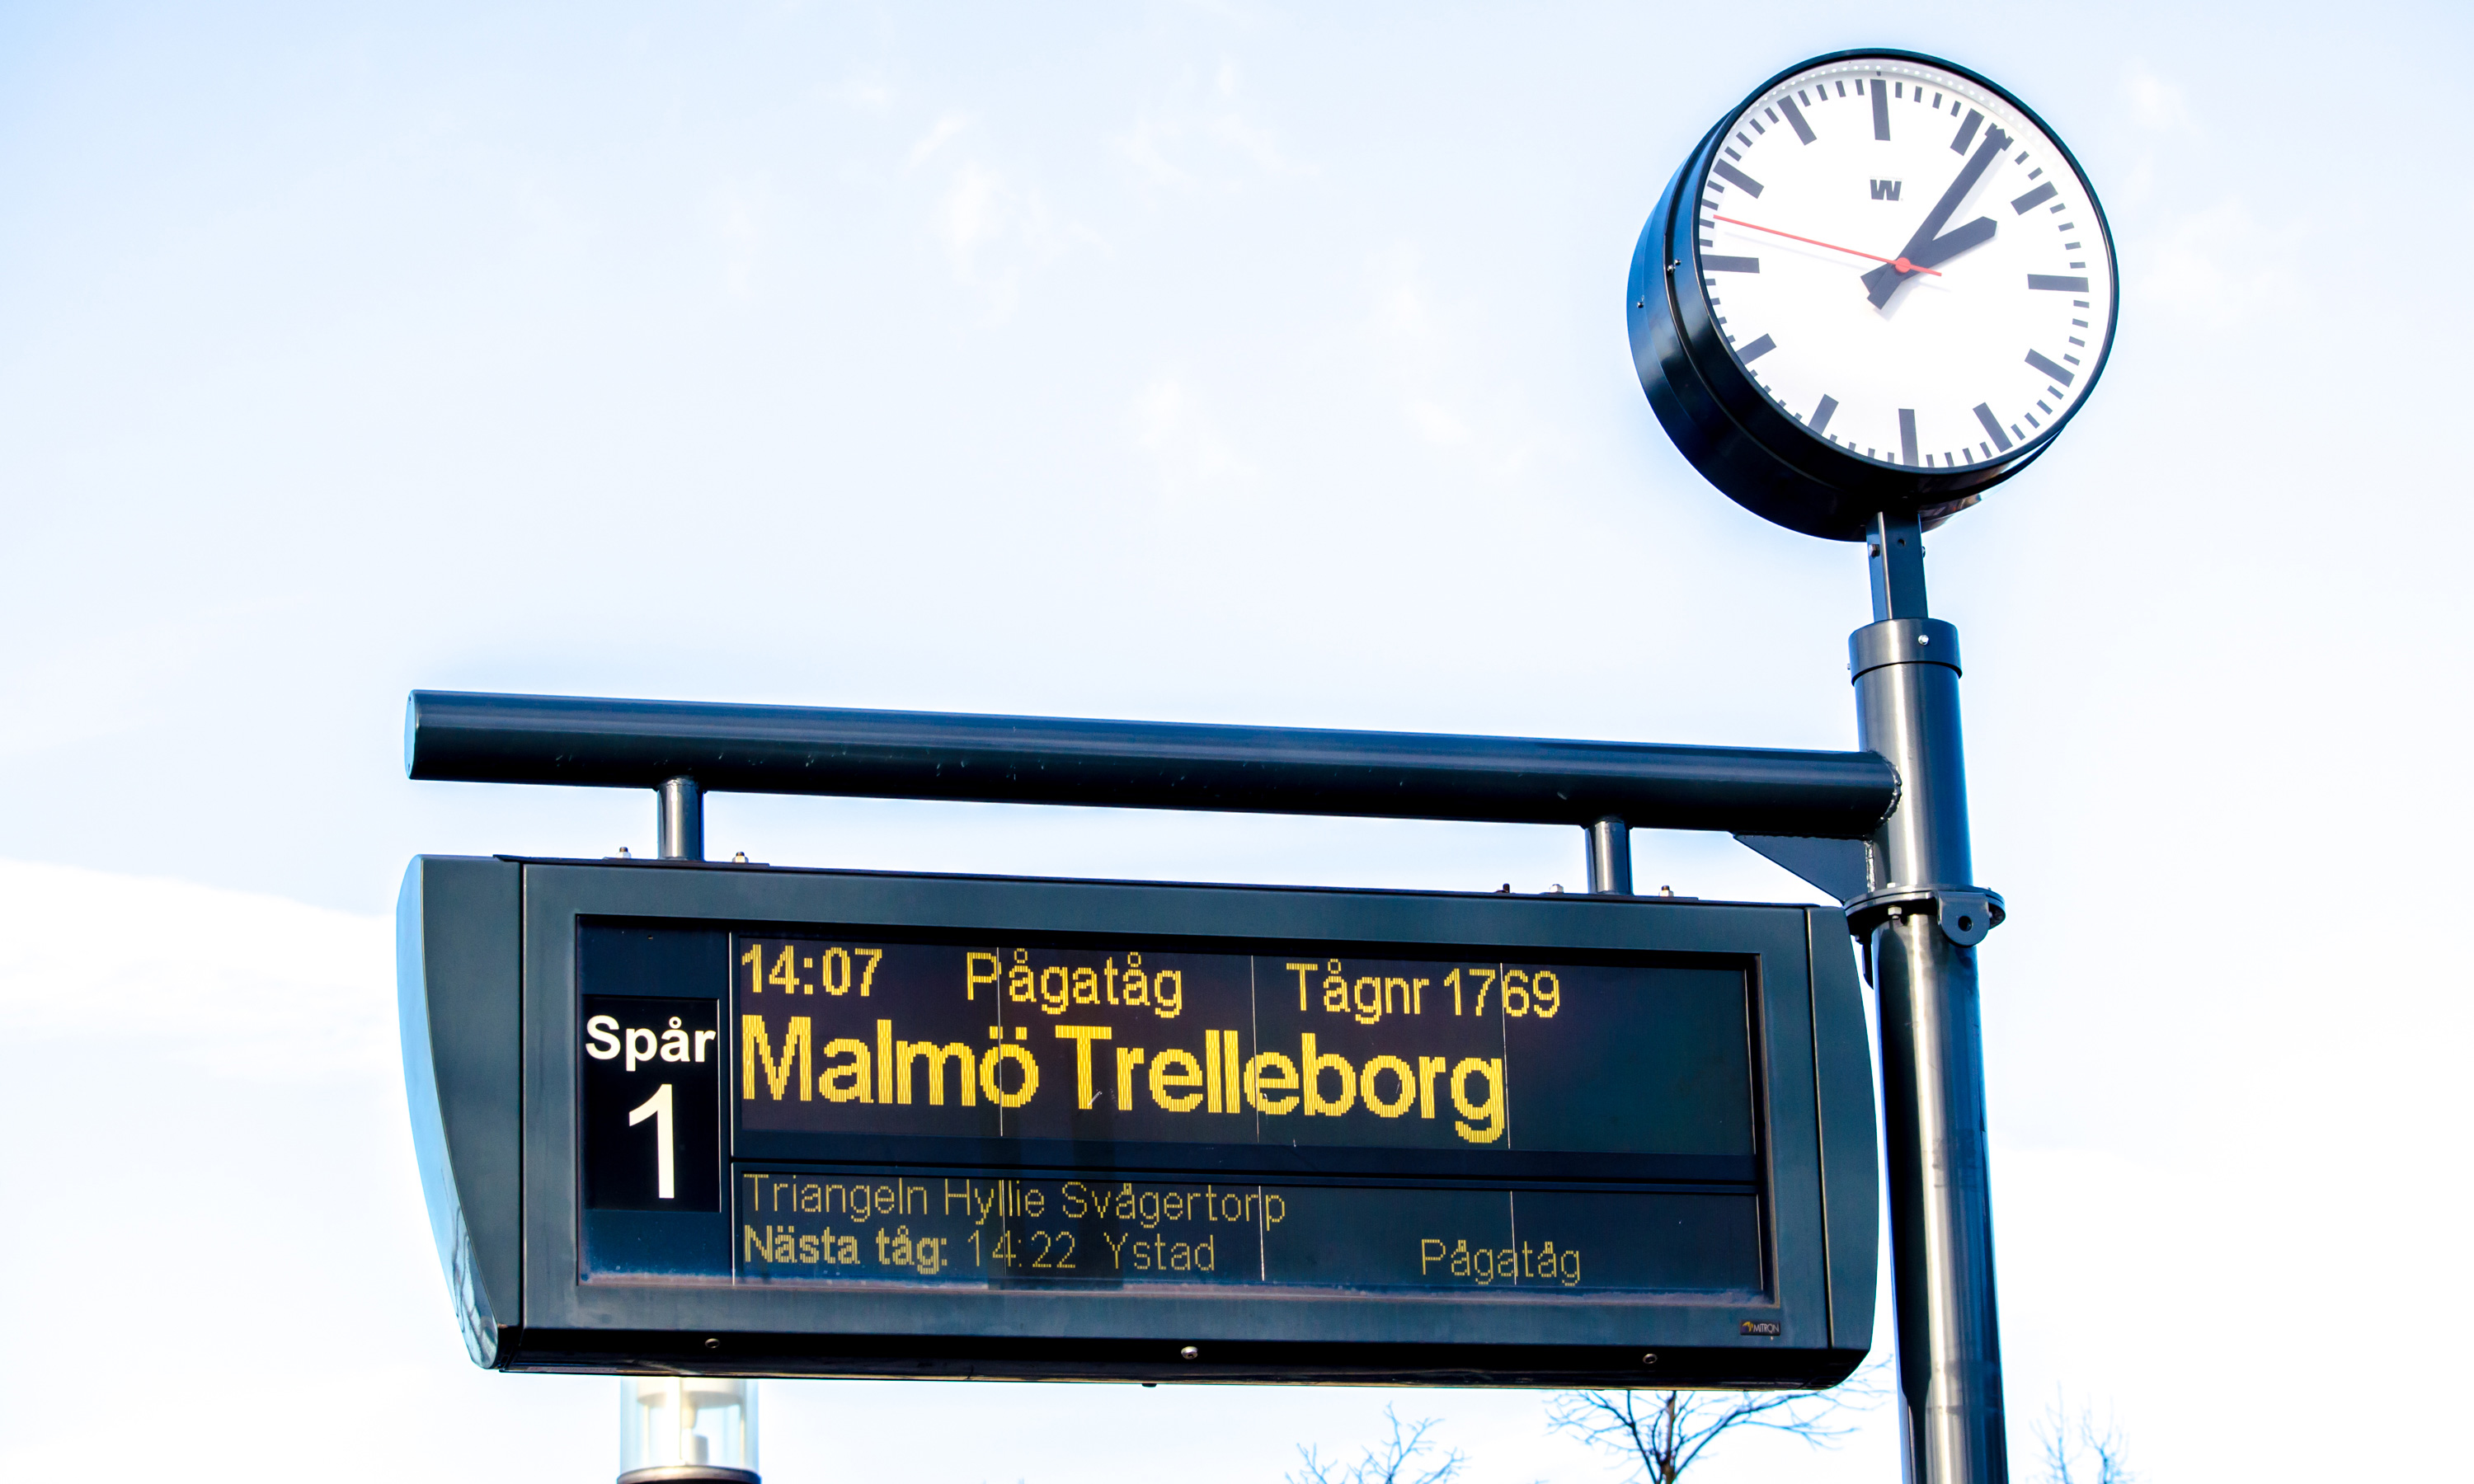 Elva fastanställda på Arrivas trafikledning för Pågatågen får byta stationeringsort från Malmö till Helsingborg. De har till och med december på sig att ta ställning till om de följer med till Helsingborg eller inte.